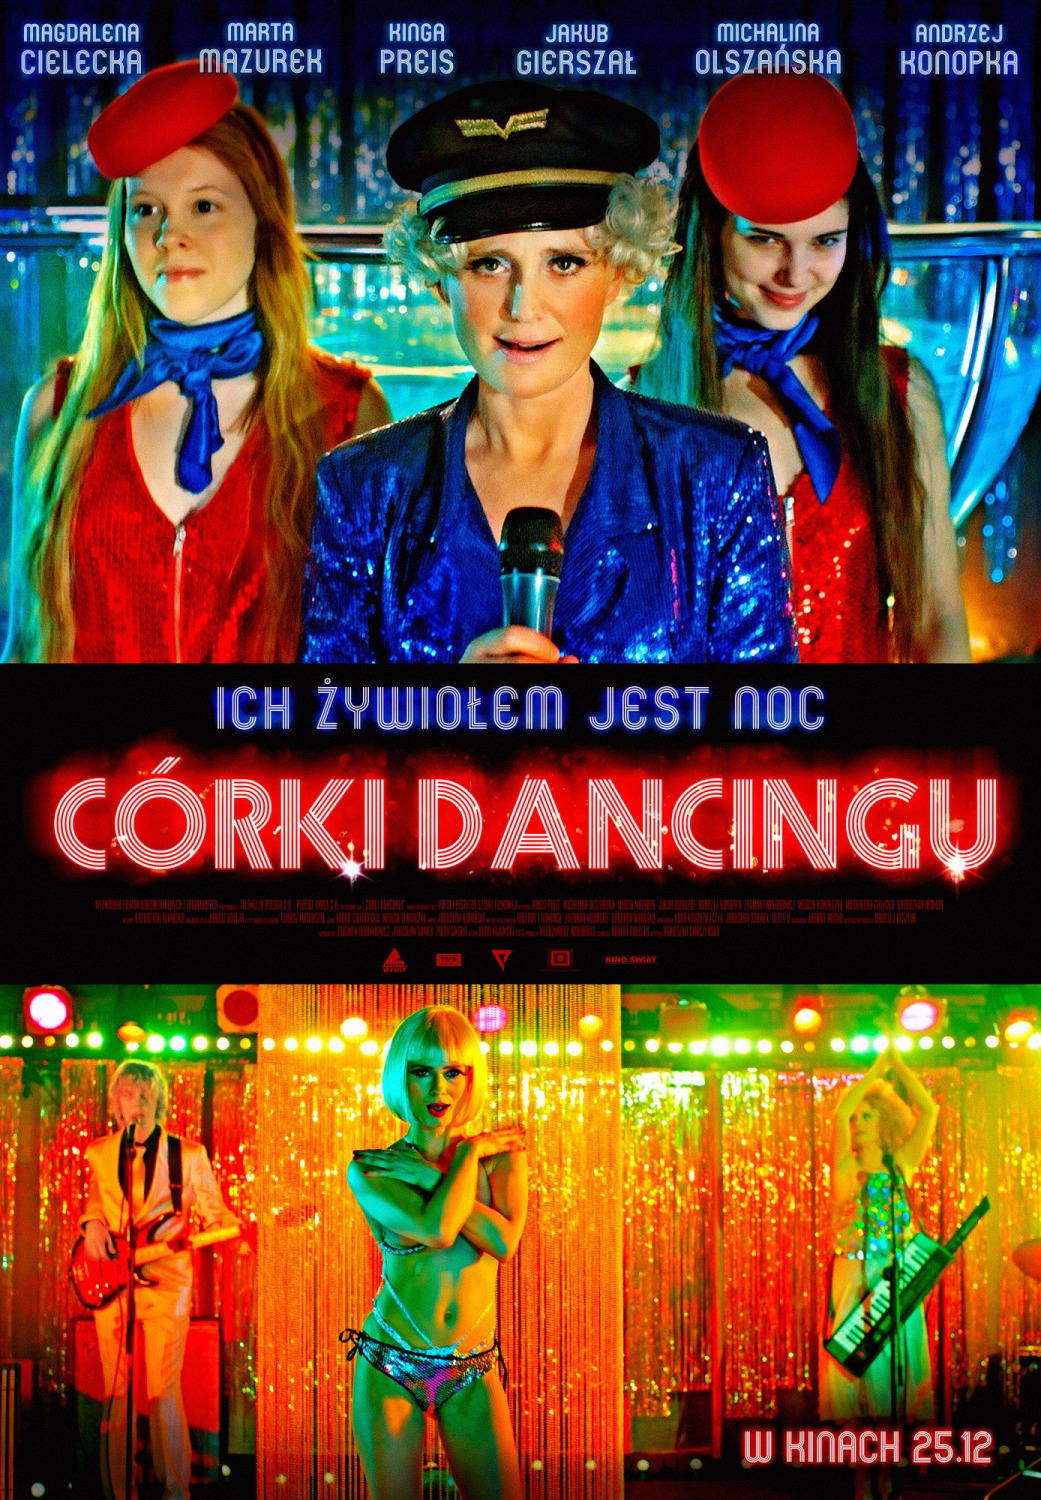 Extra Large Movie Poster Image for Córki dancingu (#1 of 2)